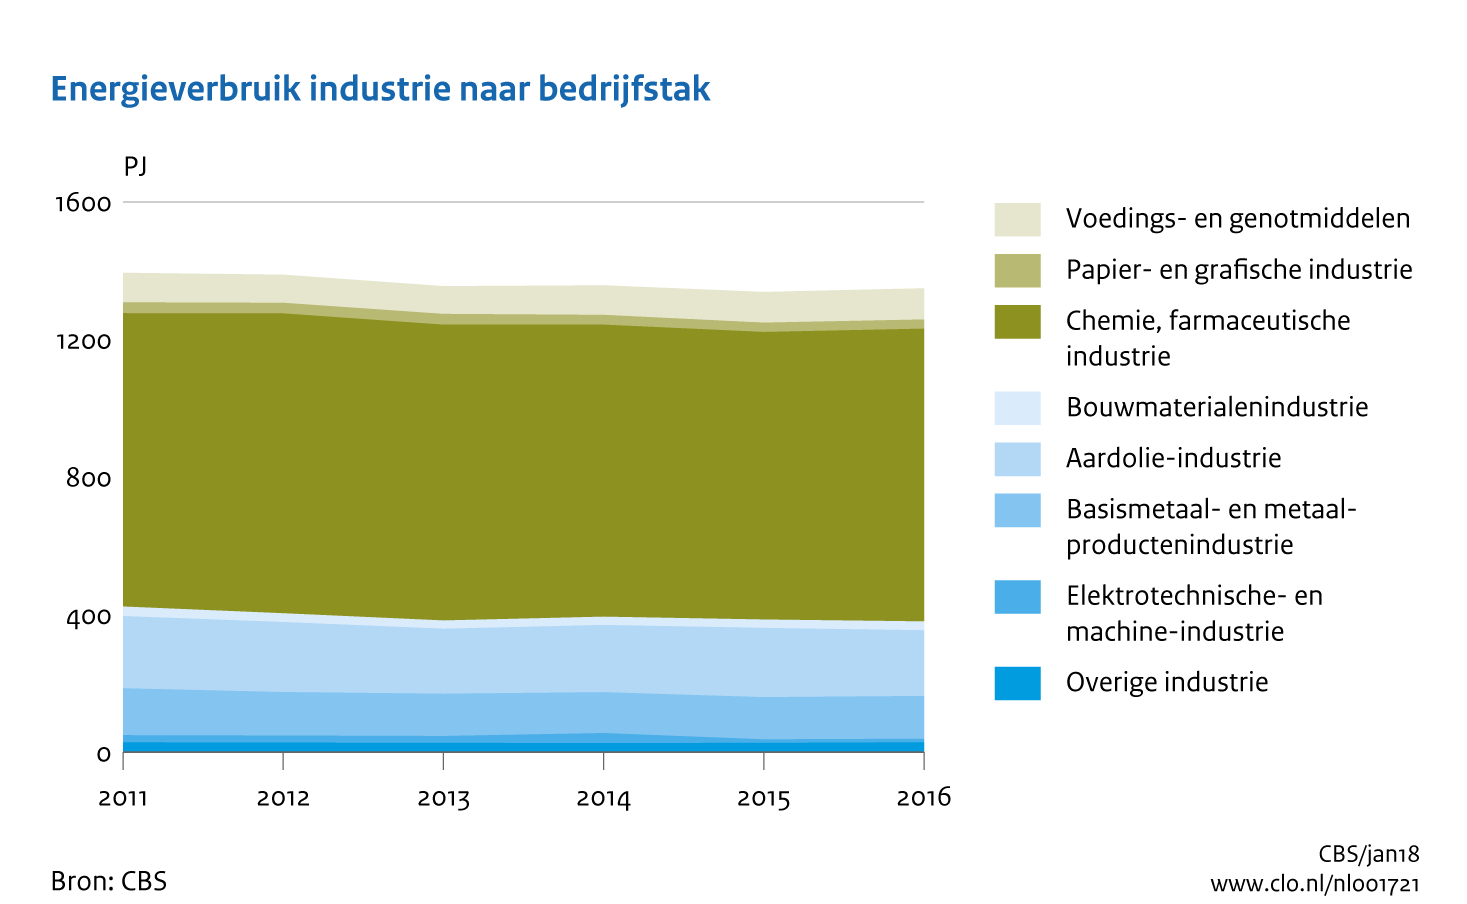 Figuur Energieverbruik industrie naar bedrijfstak 2011-2016. In de rest van de tekst wordt deze figuur uitgebreider uitgelegd.